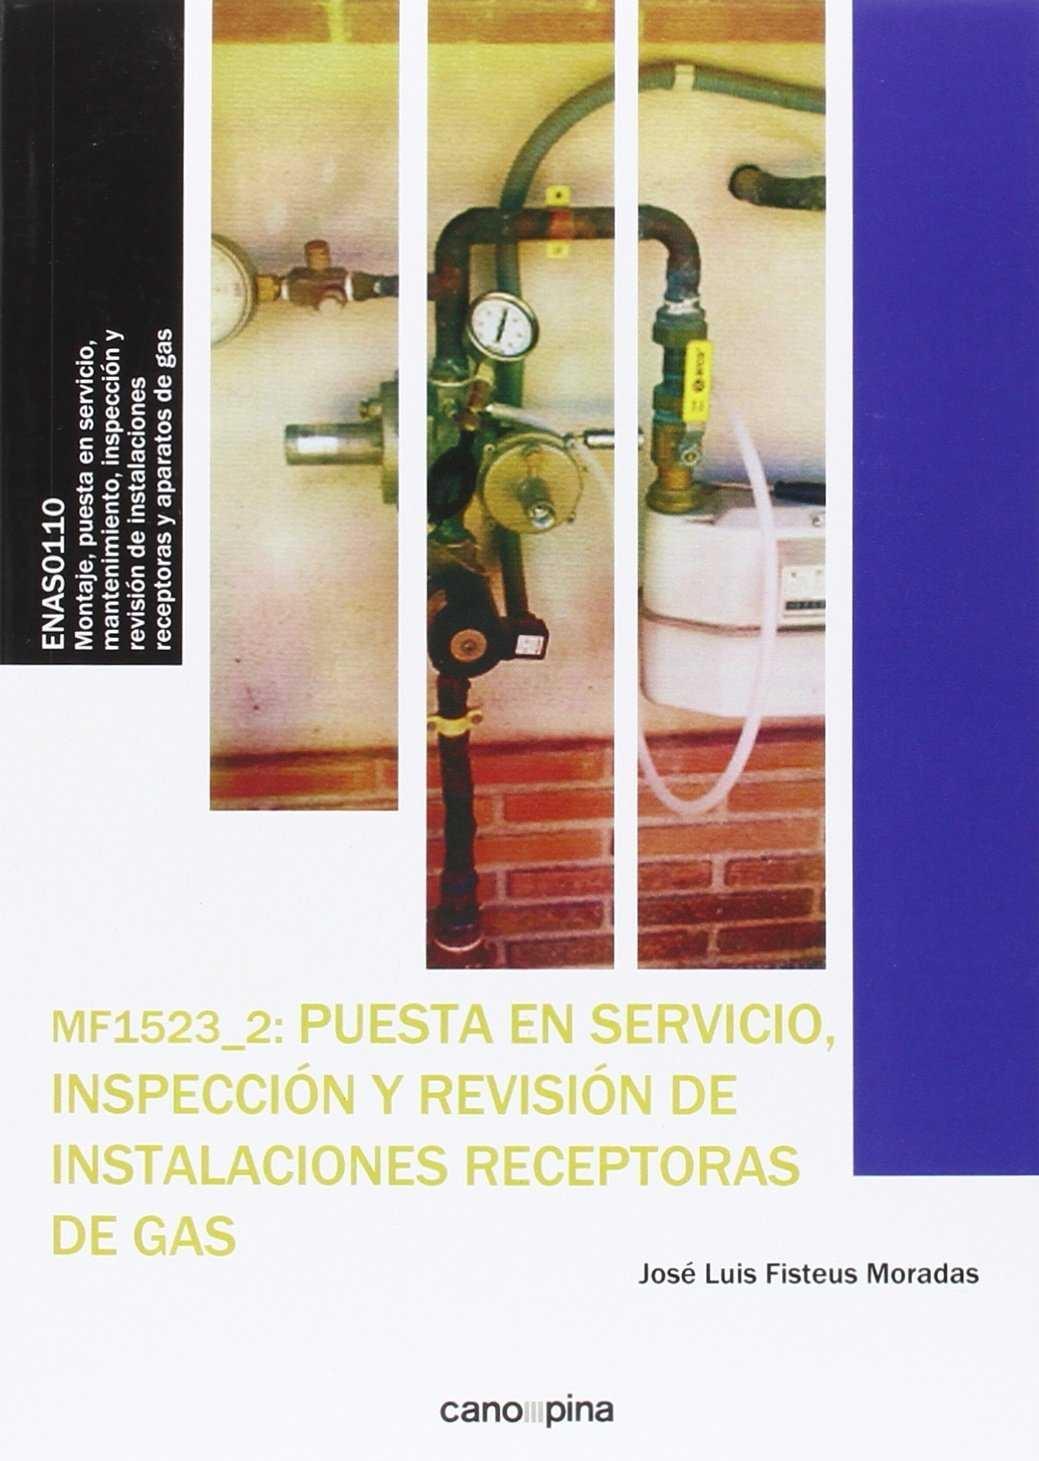 MF1523 PUESTA EN SERVICIO, INSPECCIÓN Y REVISIÓN DE INSTALACIONES RECEPTORAS DE